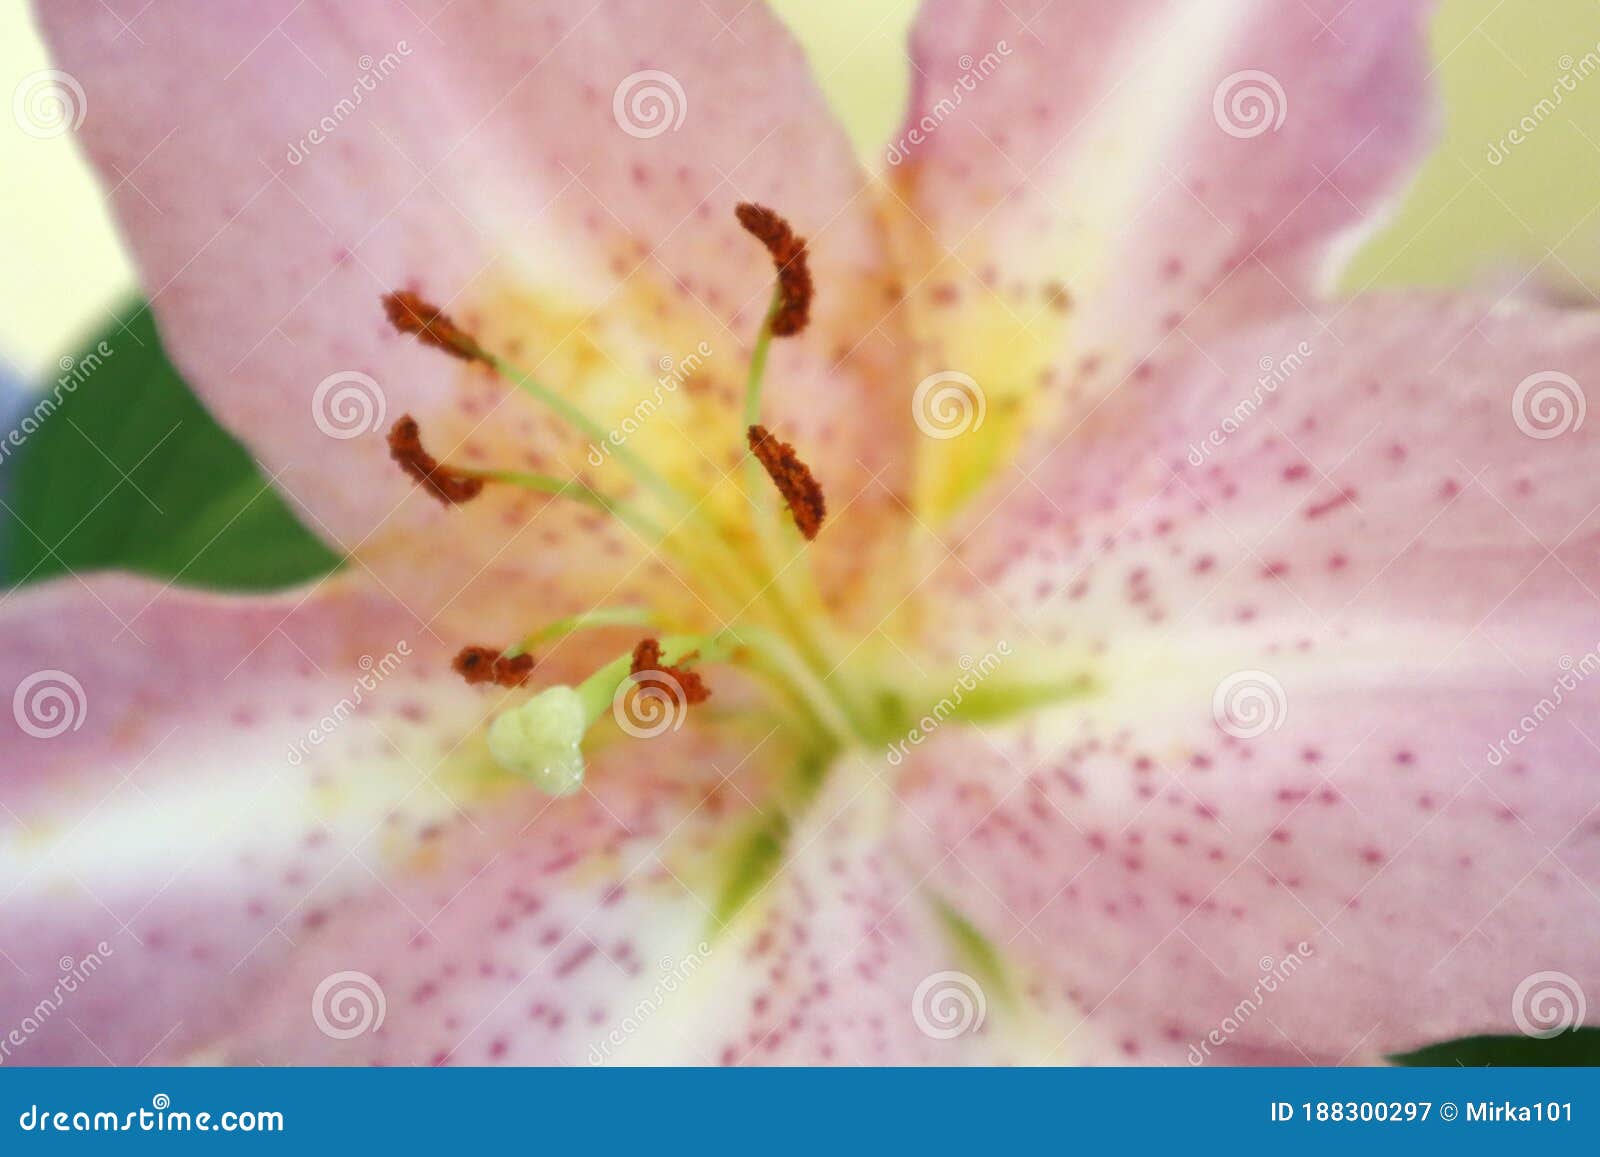 close-up of an open lilium flower.